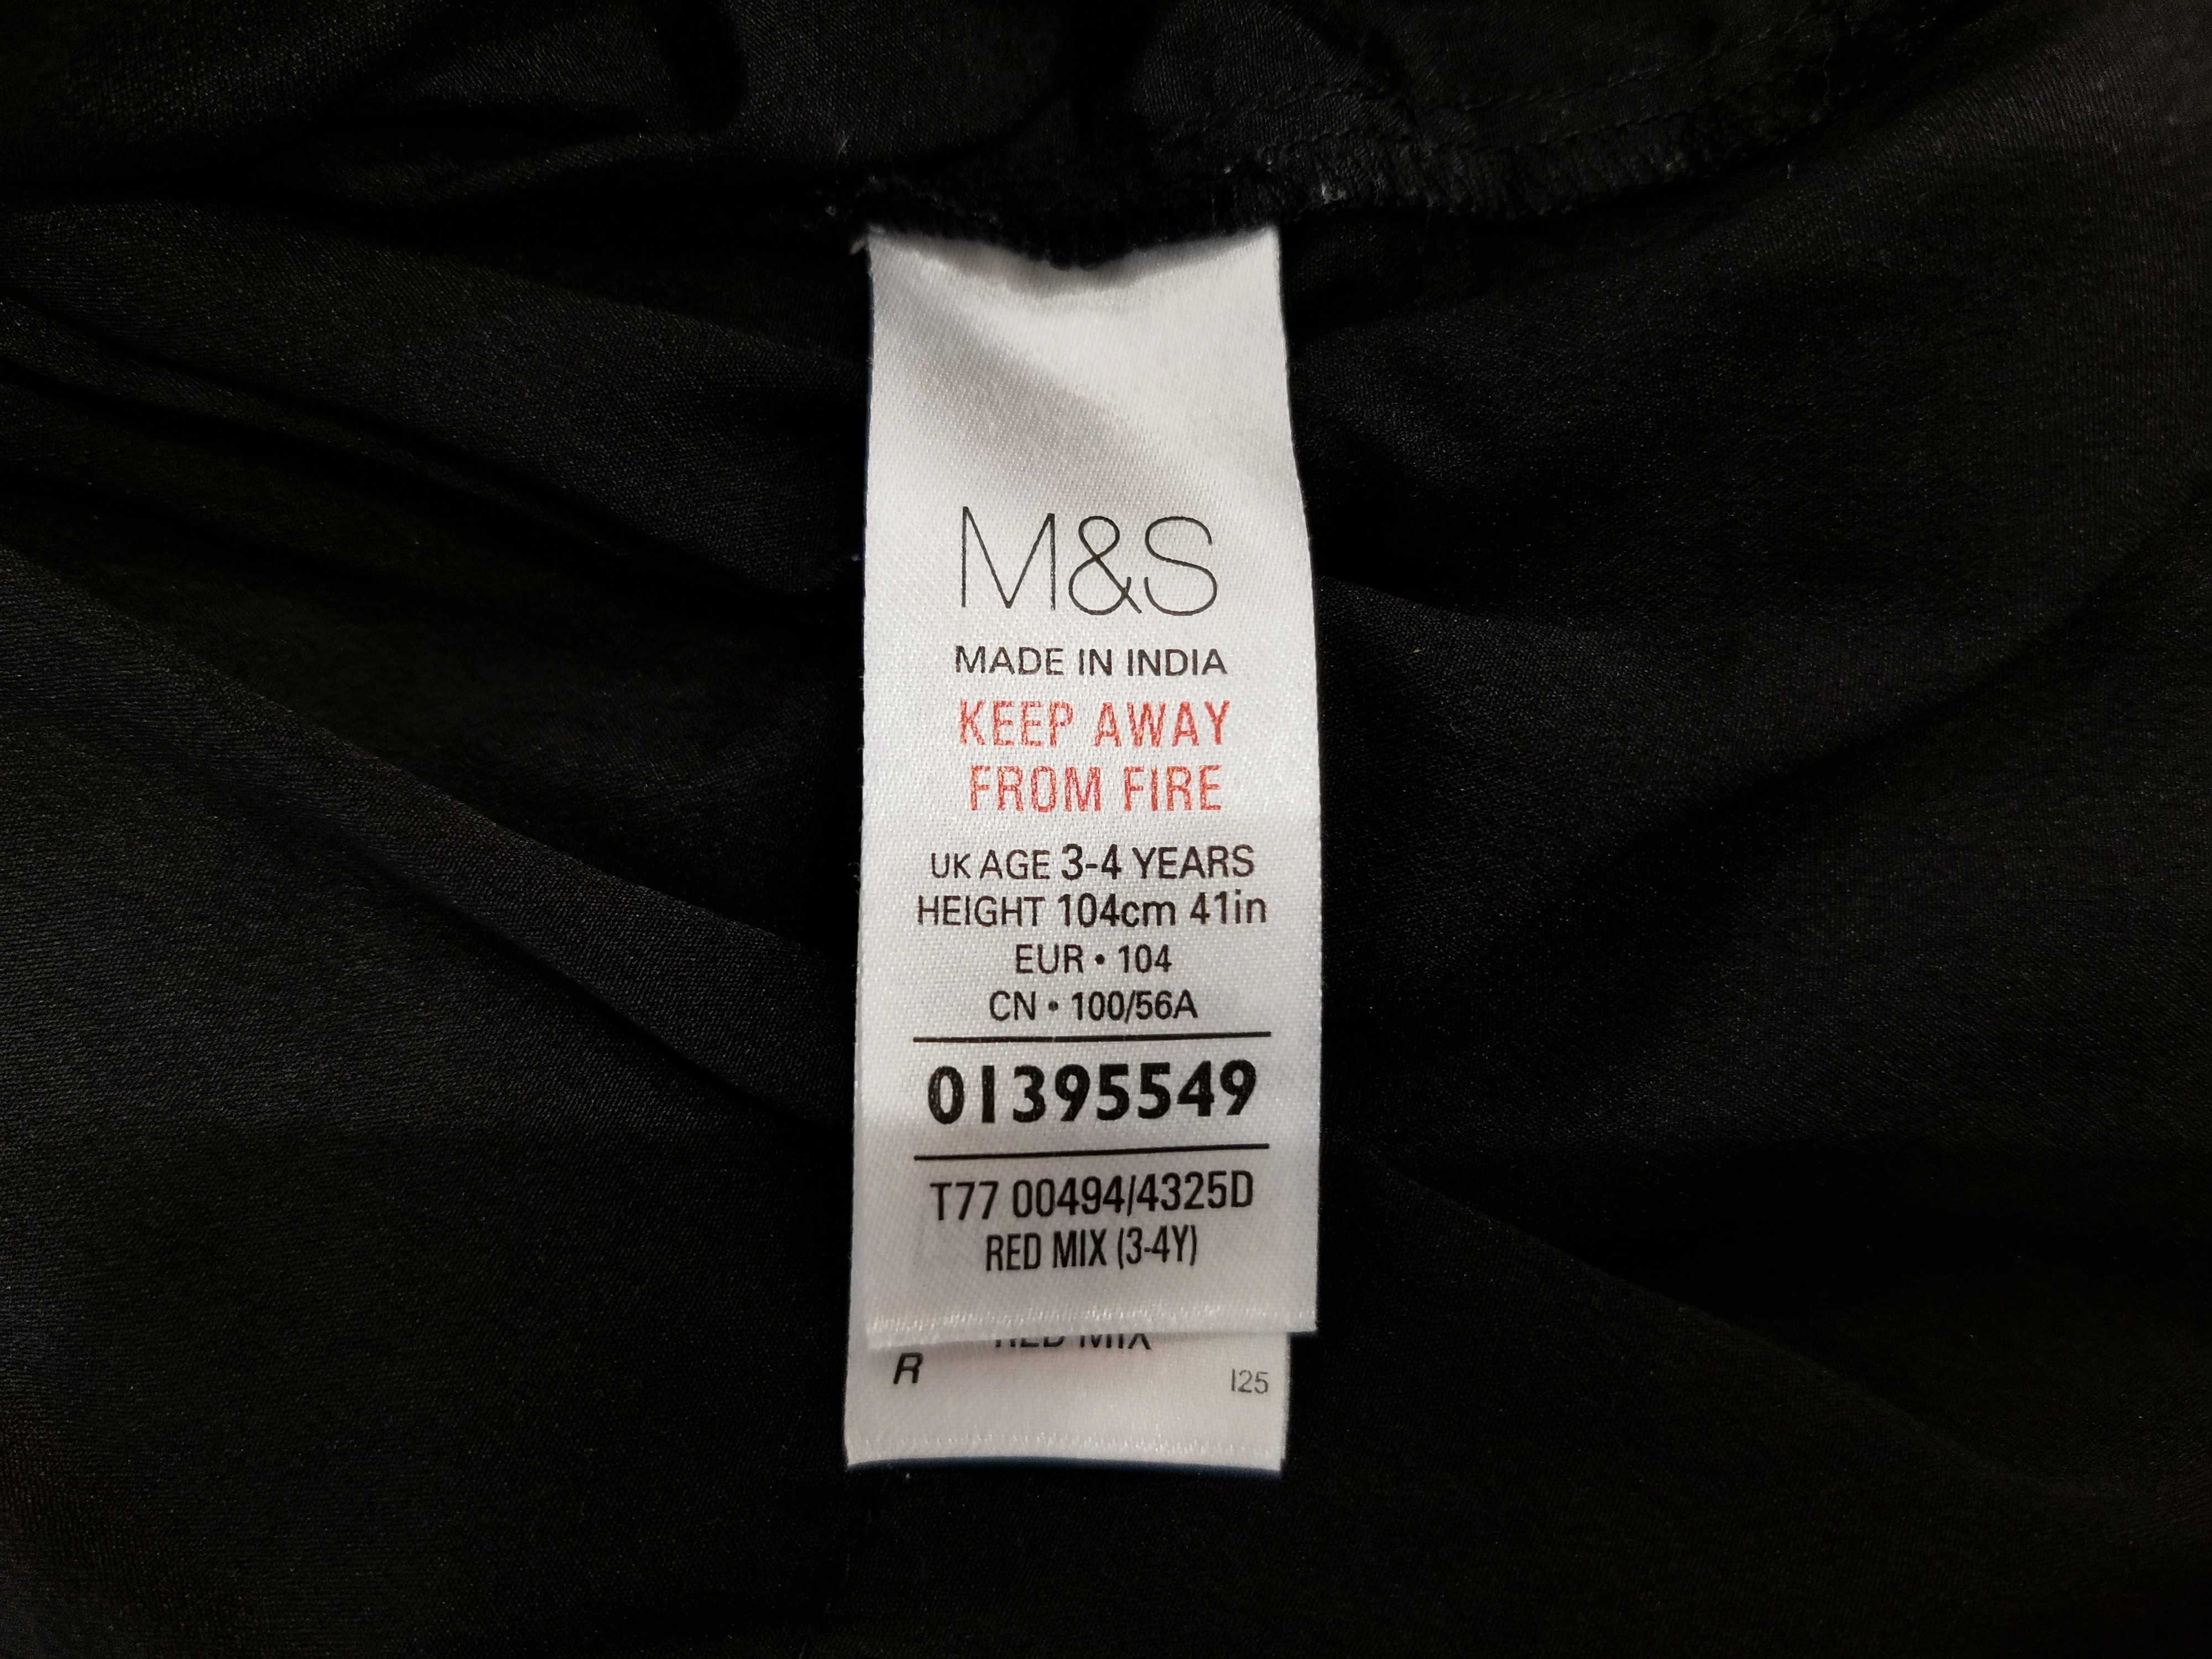 Фирмен. нарядное пышное платье Marks & Spencer MS на 2-3-4 лет, 104 см